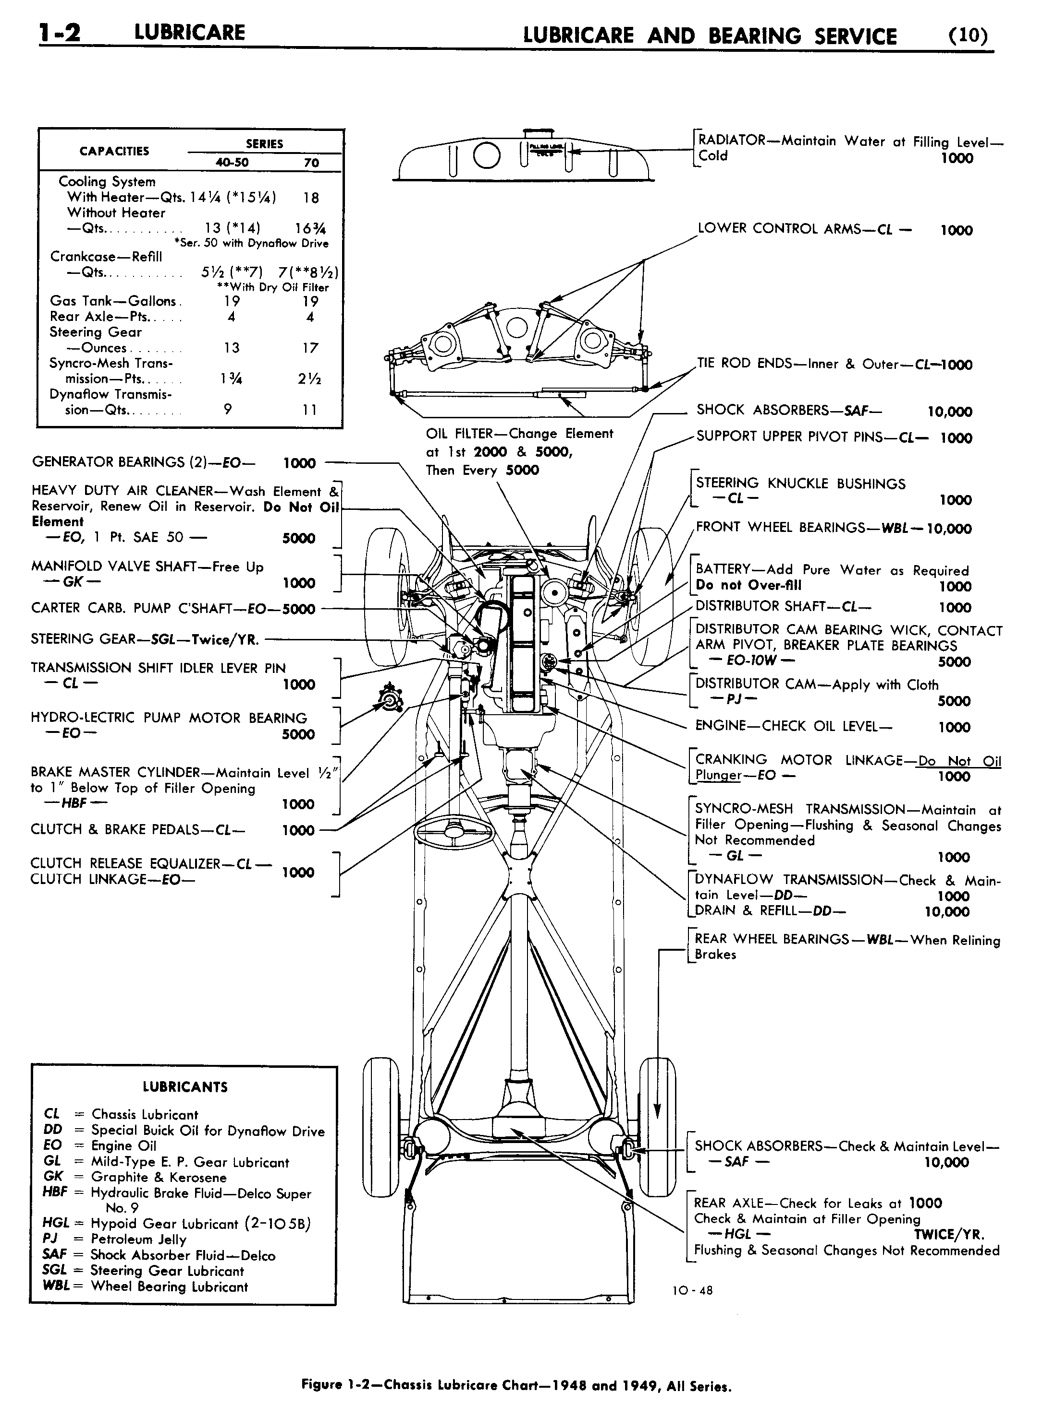 n_02 1948 Buick Shop Manual - Lubricare-002-002.jpg